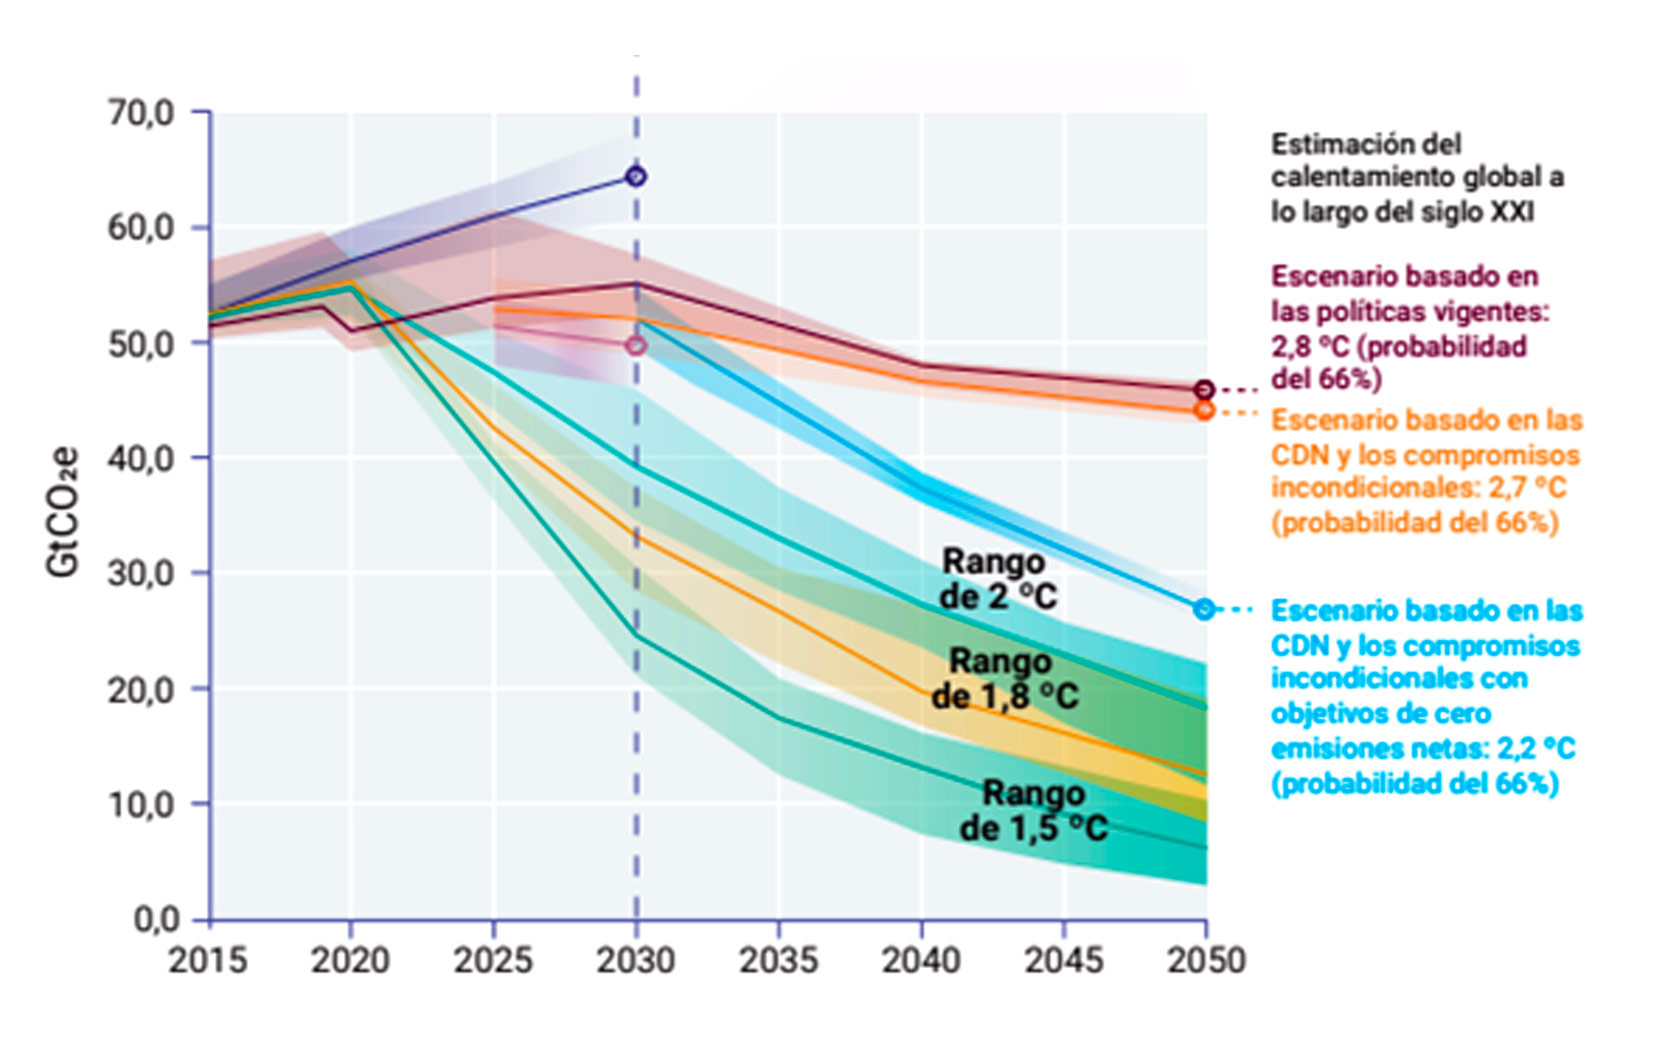 Figura 1. Líneas de trayectoria de las emisiones globales de gases de efecto invernadero. Se muestra en morado la trayectoria sin política climática; en rojo el escenario esperado de acuerdo con las políticas actuales; en naranja el escenario esperado si los países cumplen con sus NDC que conduciría a una estabilización de la temperatura media global de 2.7 oC y en azul los compromisos que involucran alcanzar las cero emisiones antes de 2070 (que conducirían a una estabilización de la temperatura de 2.2 oC). Además, se muestran las rutas de estabilización de 2 y 1.5 oC (sin compromisos reales de mitigación). Figura tomada de (1).